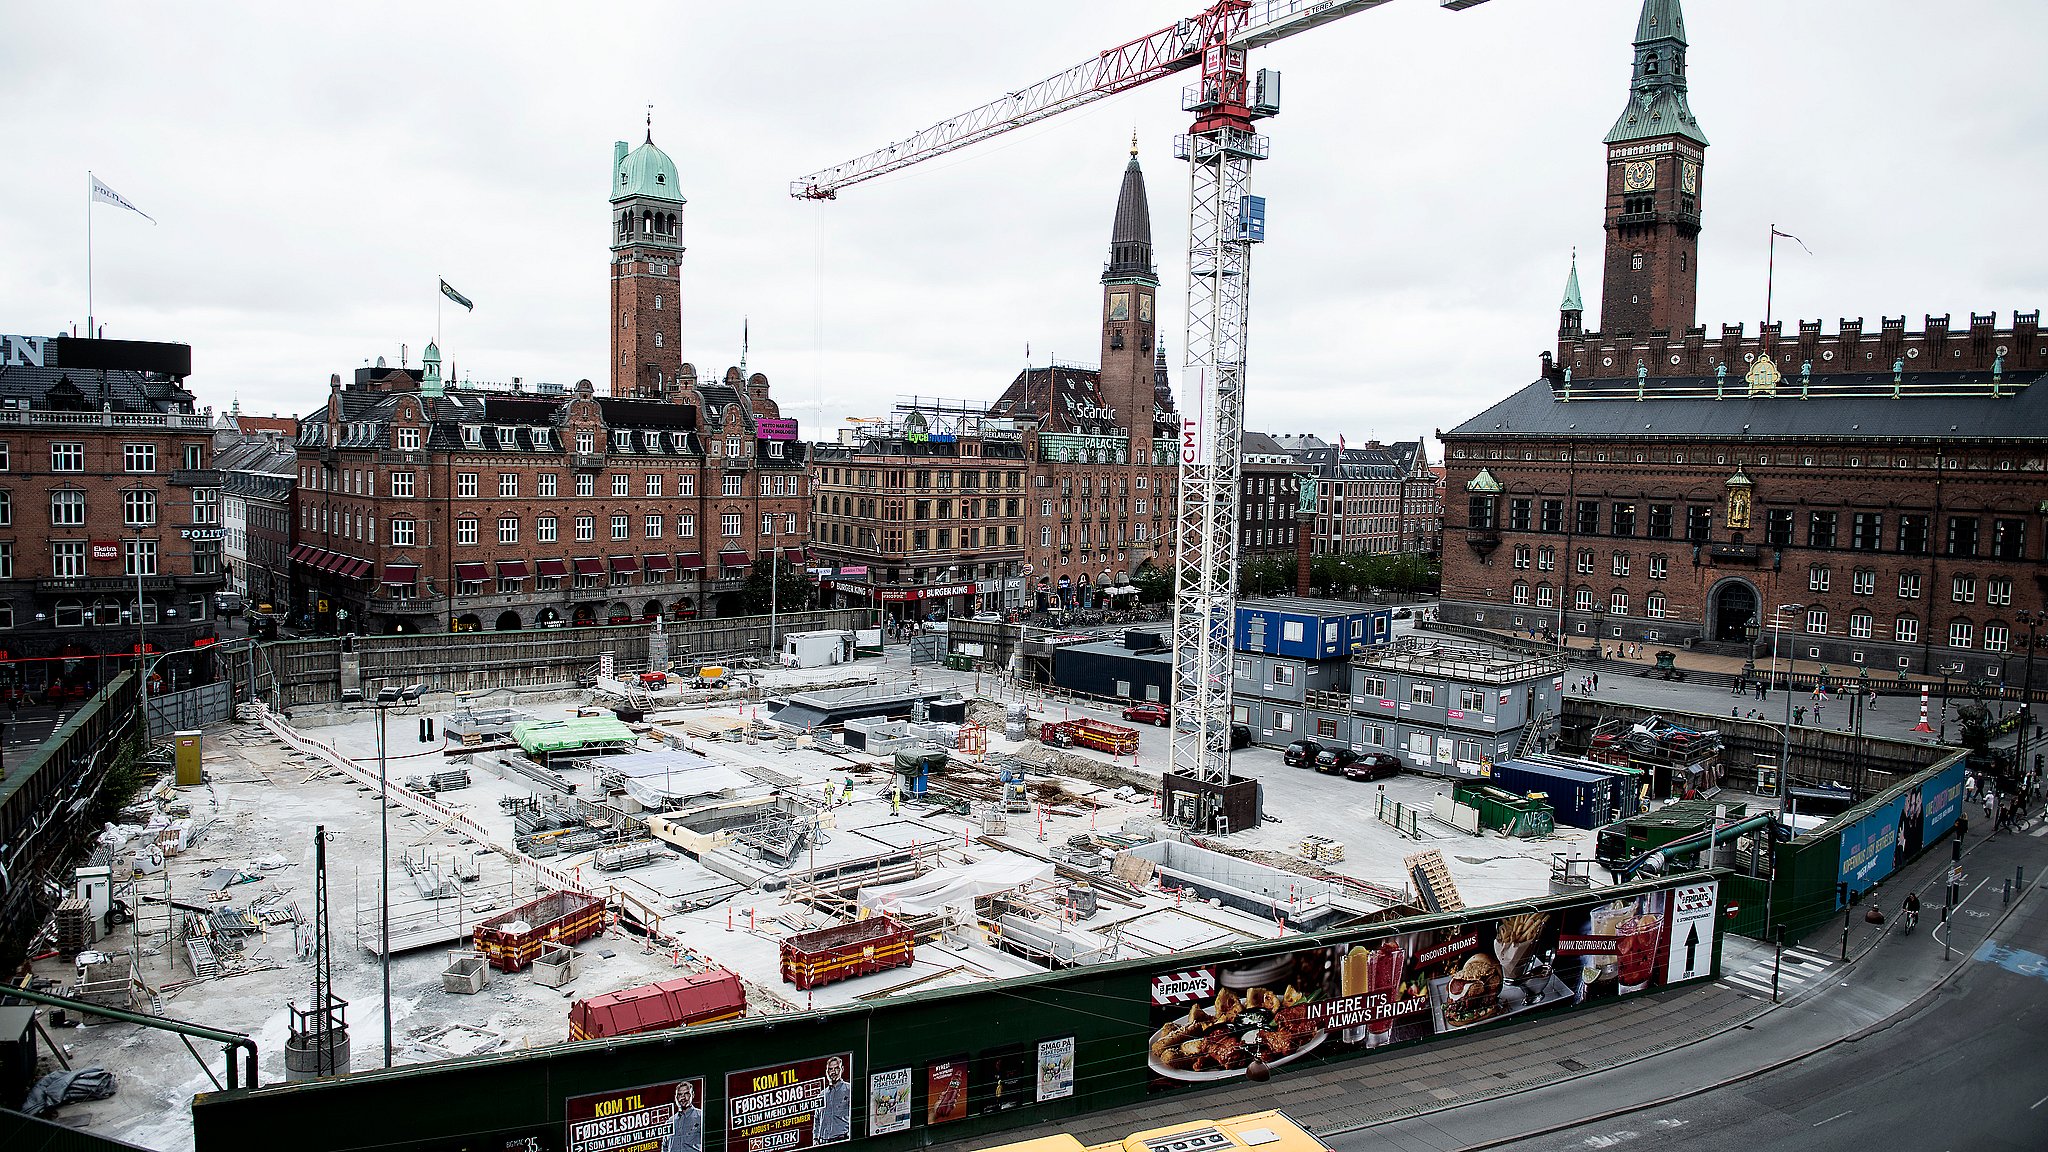 Bevæger sig ikke dramatisk femte Stort fund under Rådhuspladsen kan ændre Københavns historie | TV 2 Lorry